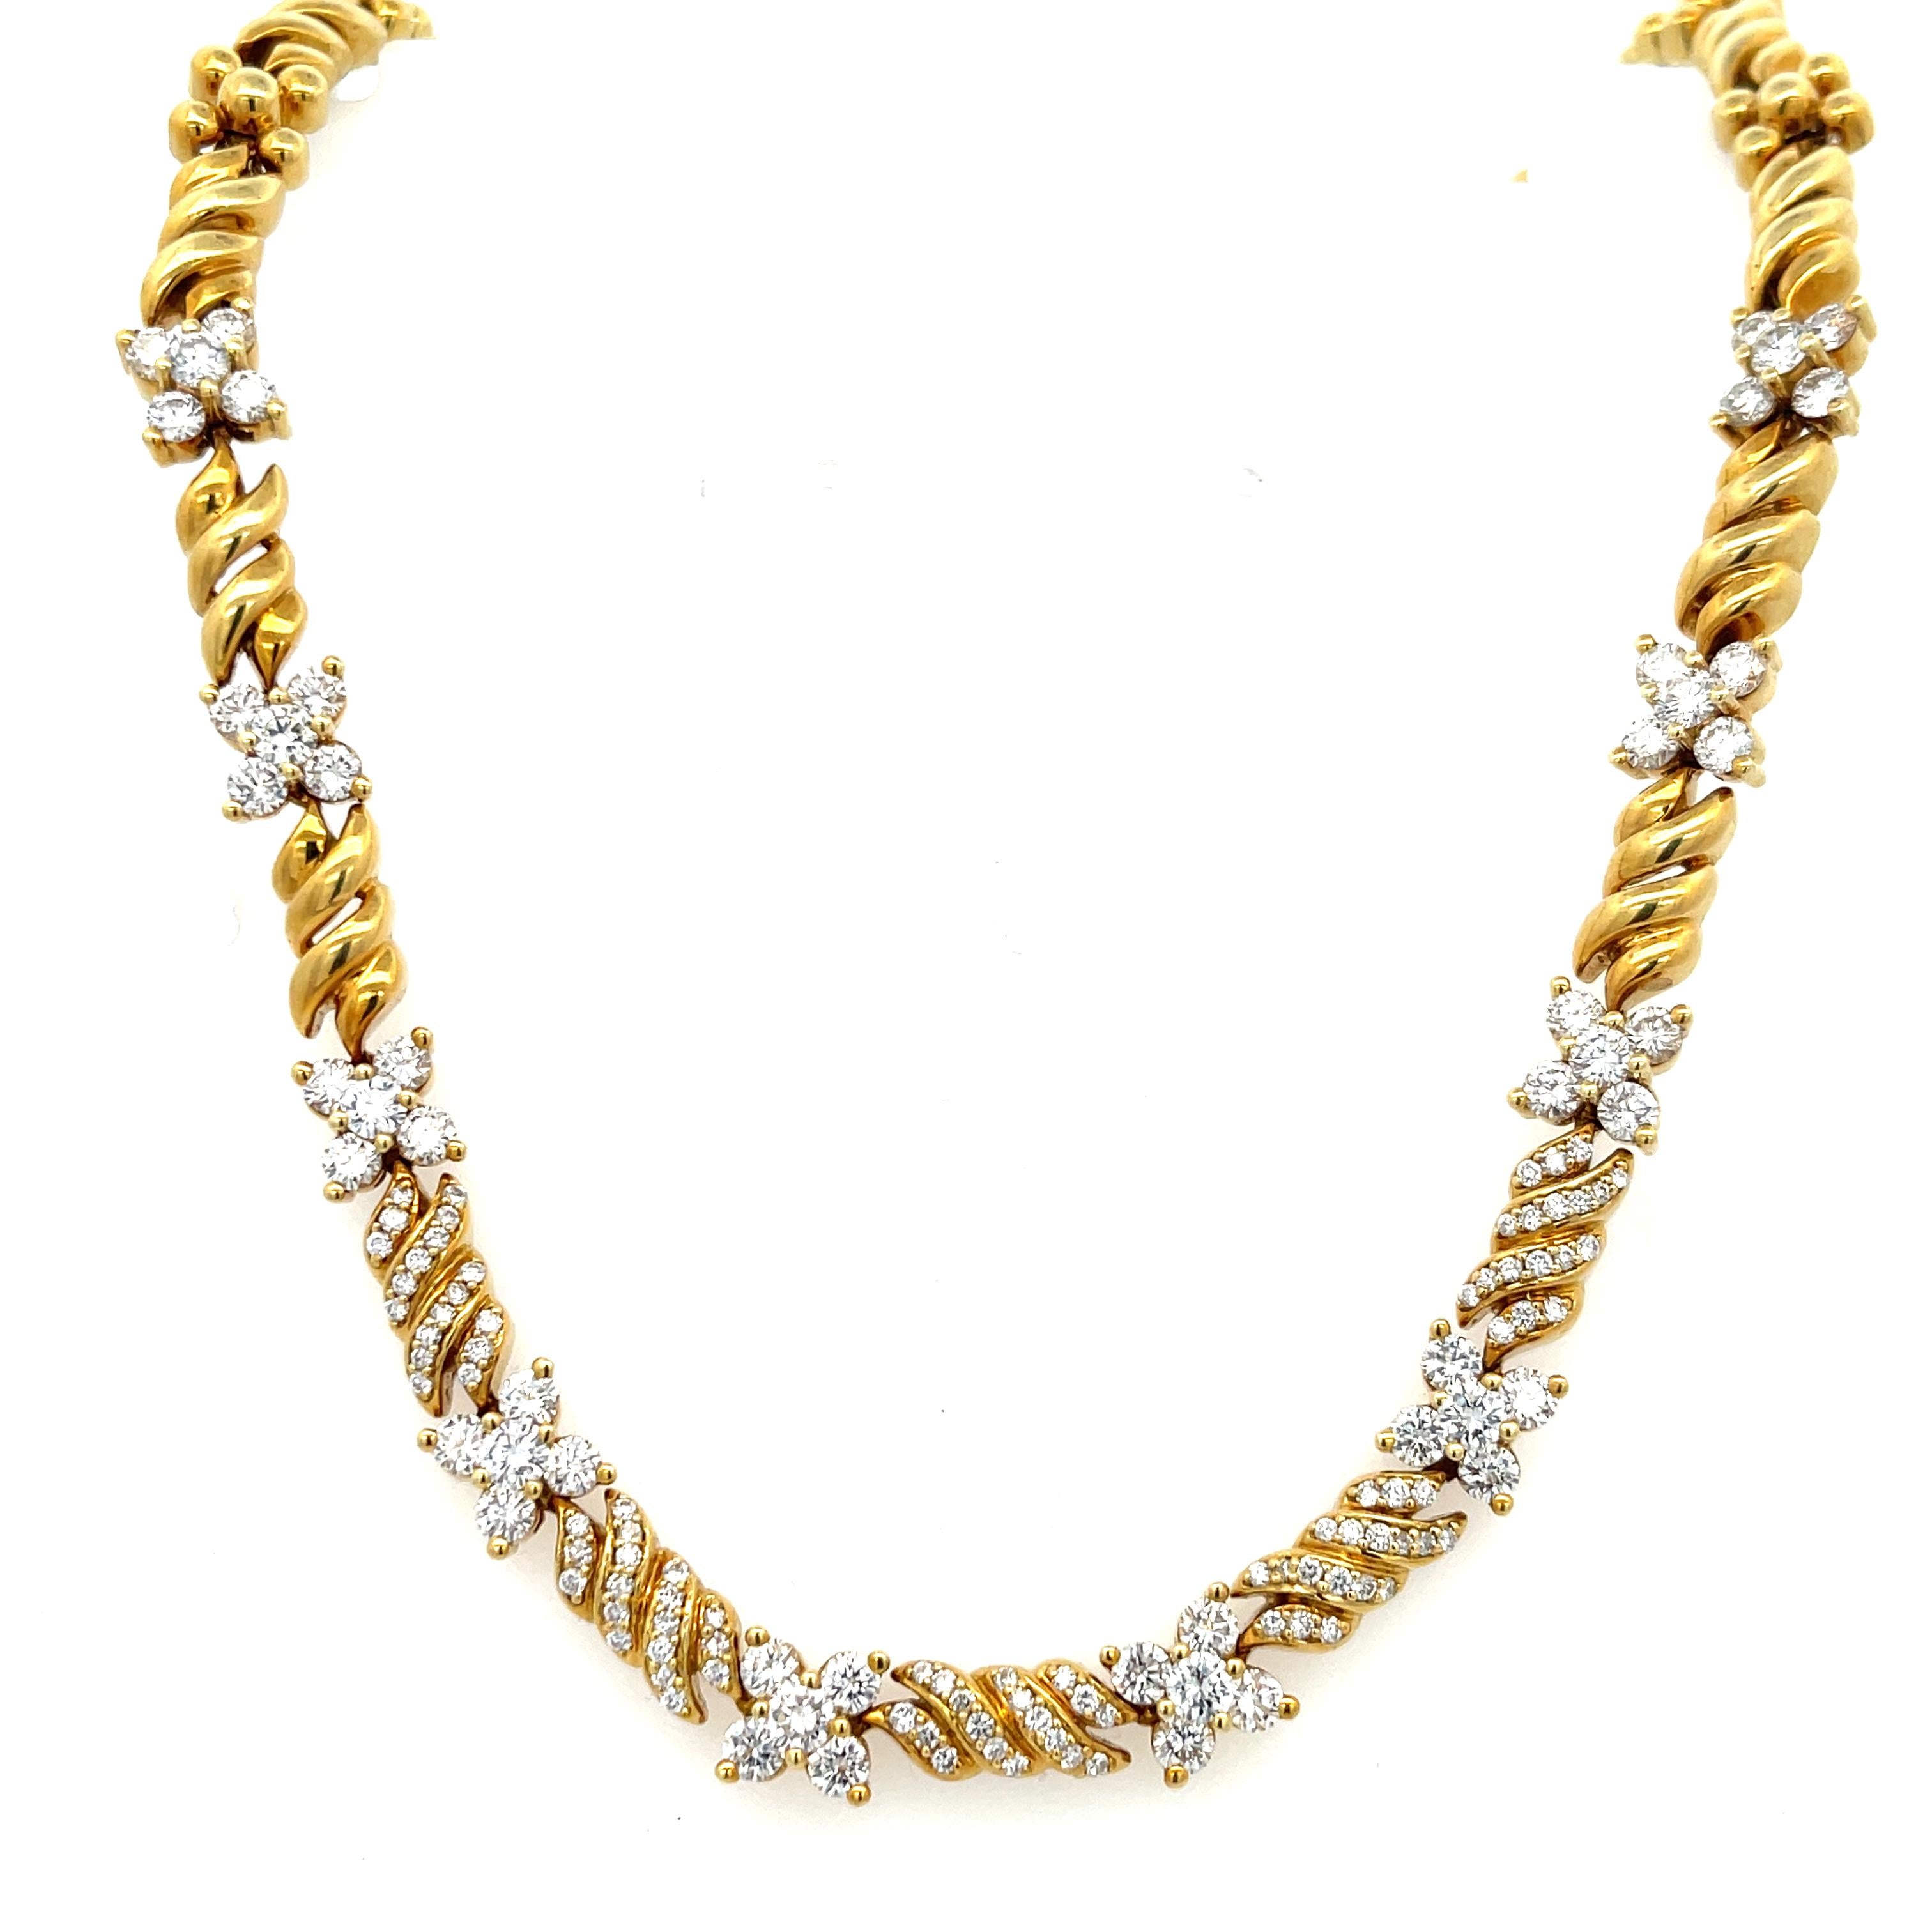 Collier de diamants Floret en or jaune 18 carats de Jose HESS. Le collier comporte 6,50ctw de diamants ronds brillants, de couleur F et de pureté VS. Le collier mesure 16 pouces de long, 3/8 pouces de large et pèse 70,5 grammes. Fermoir caché et